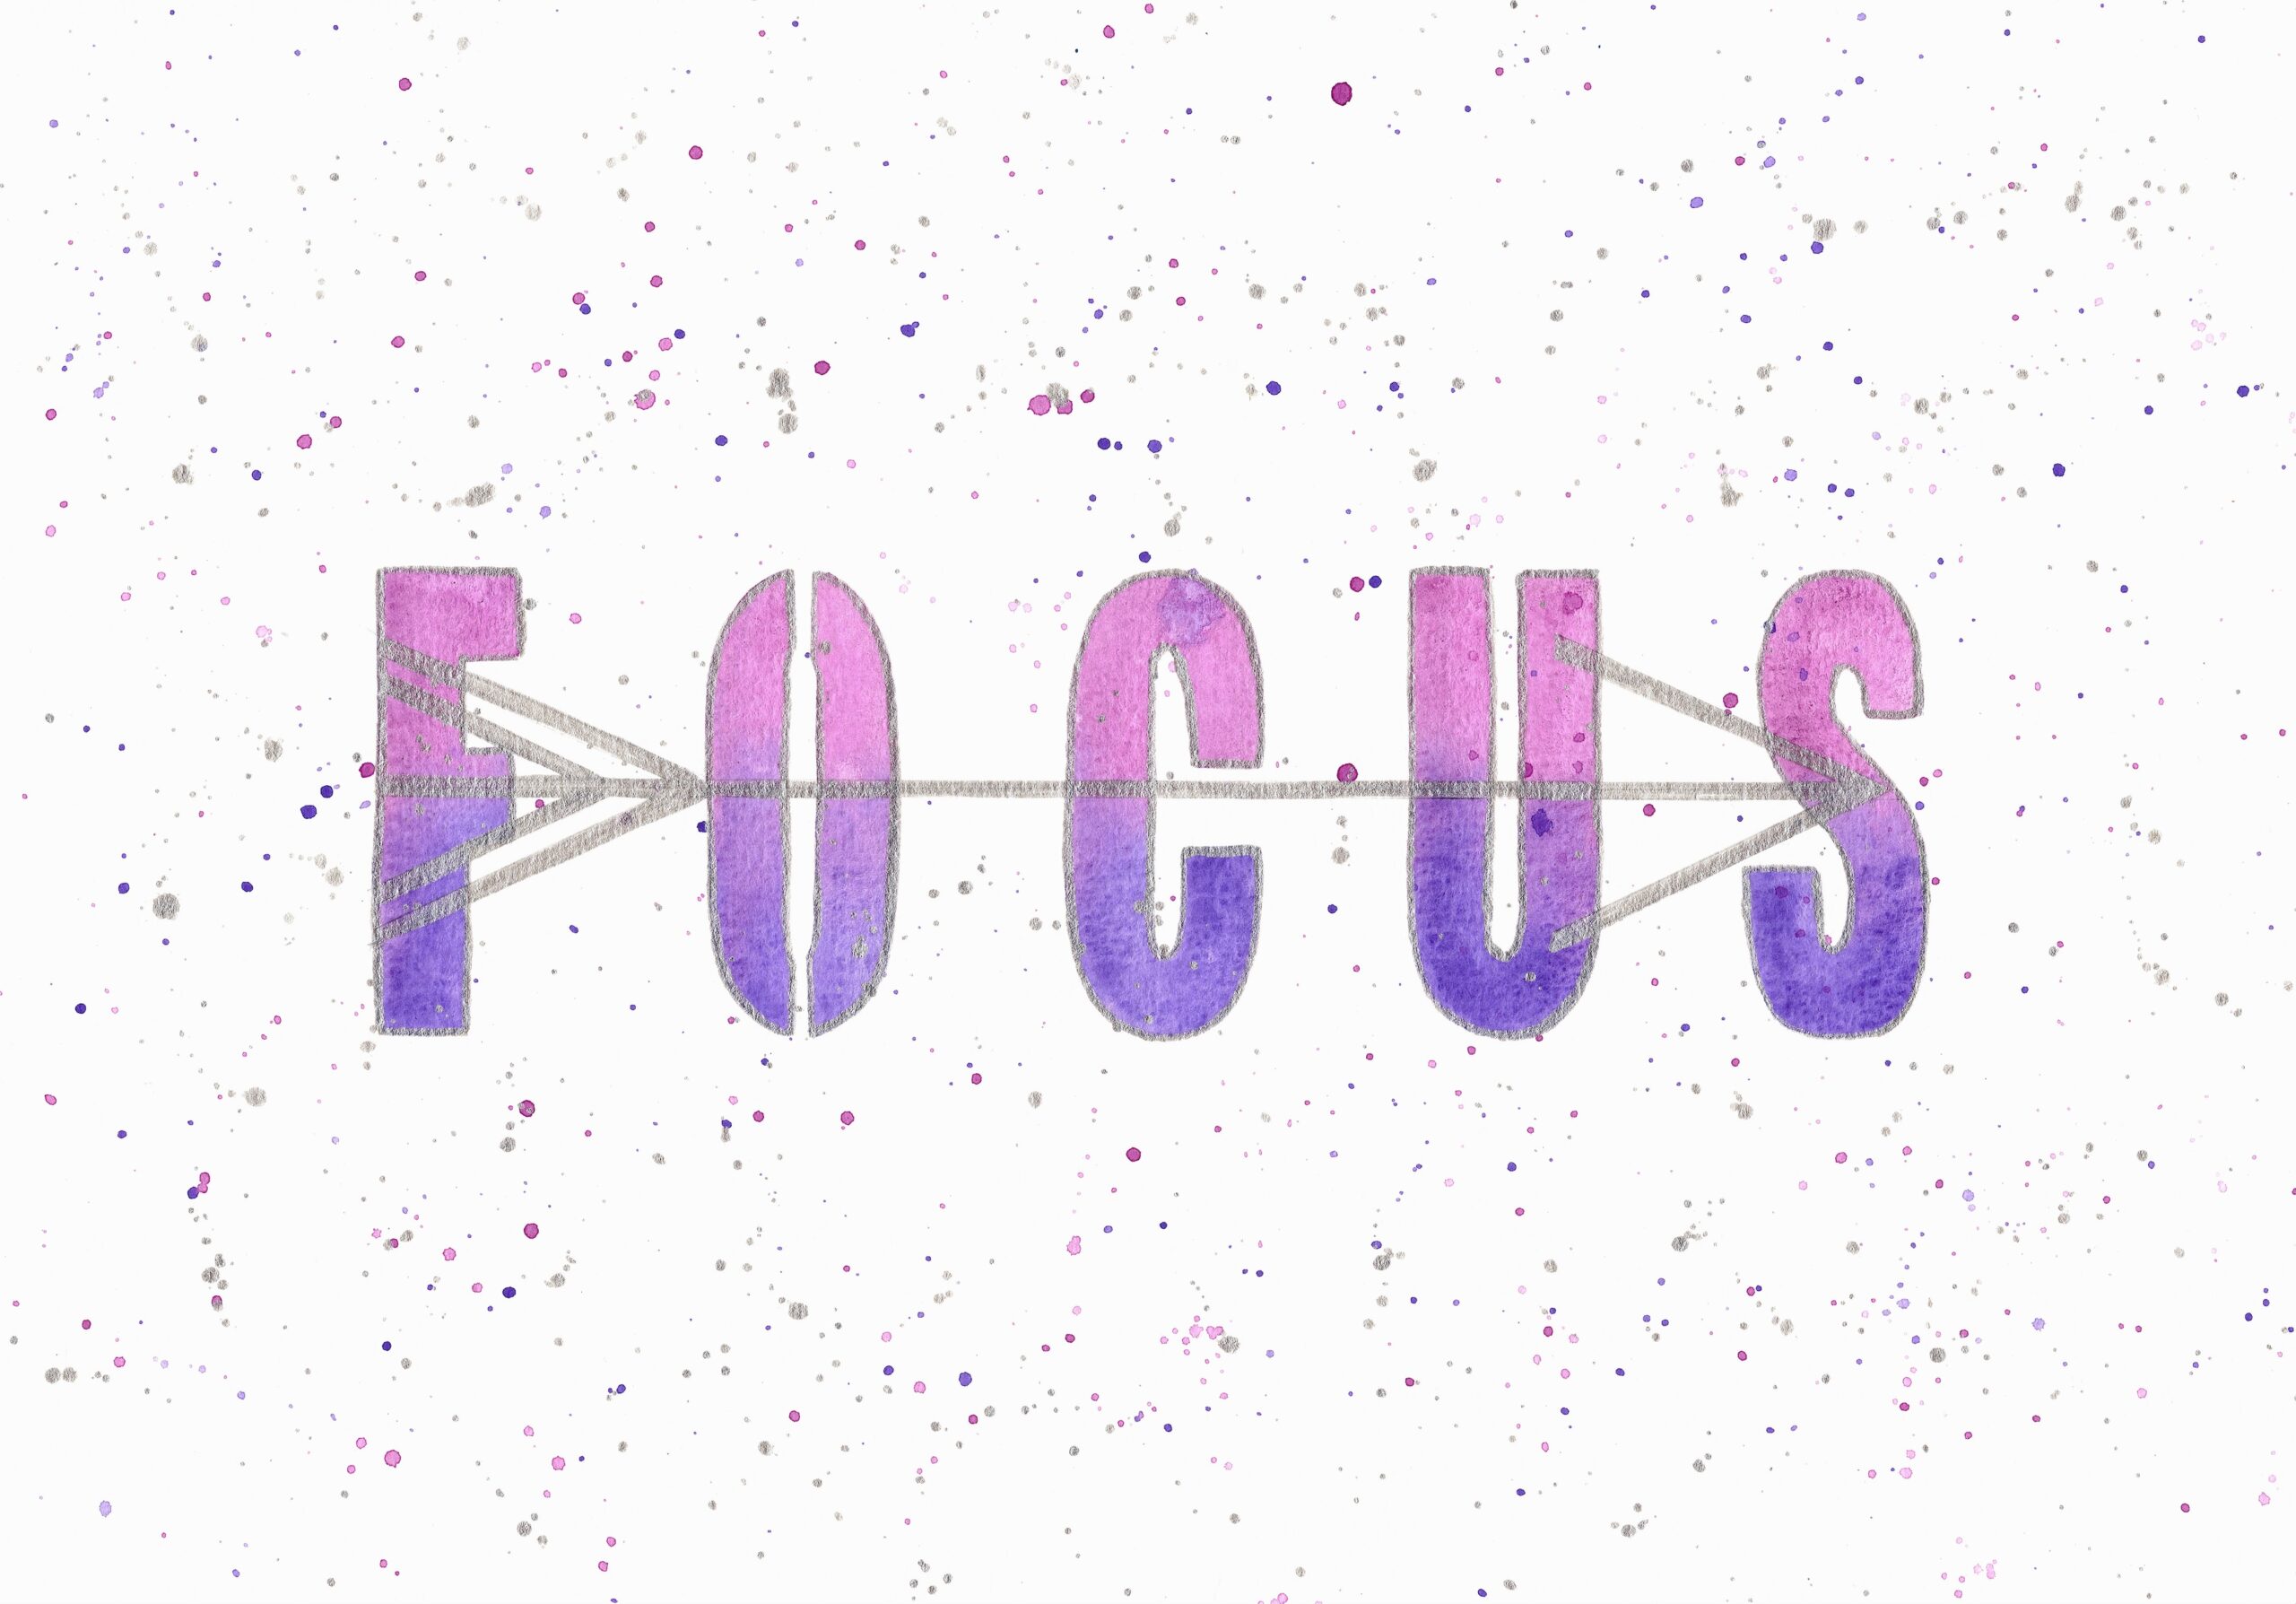 Woord van het jaar: Focus